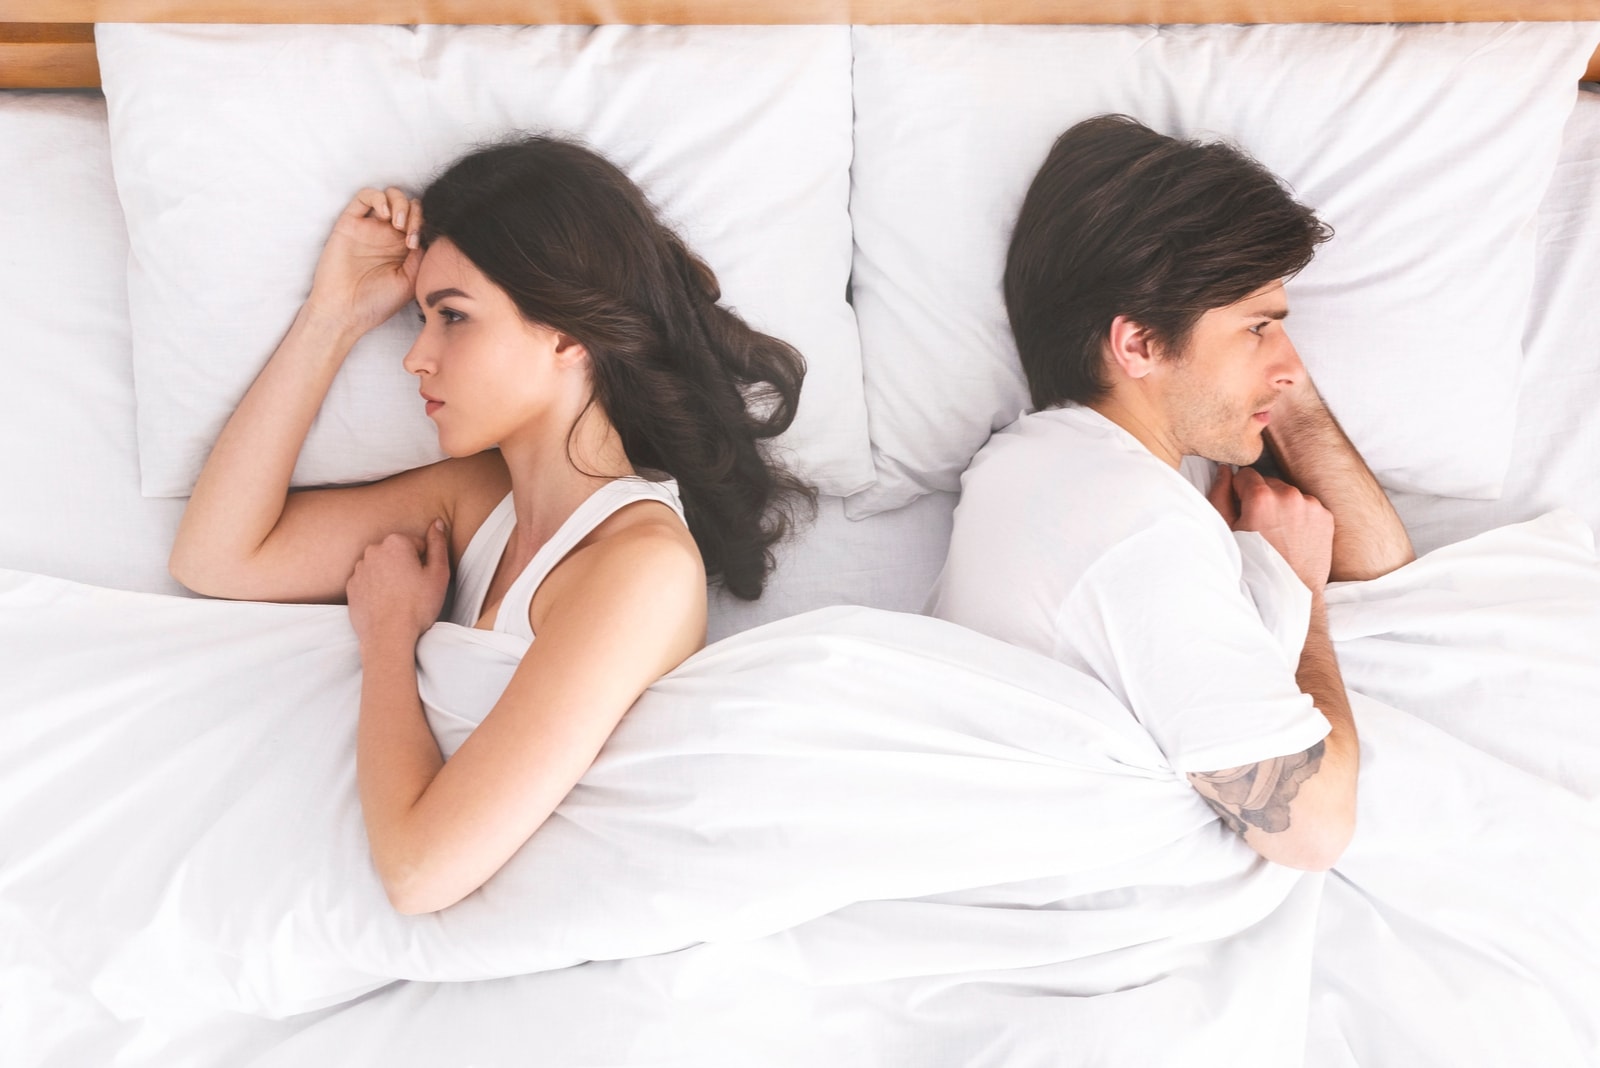 Una coppia sconvolta che si ignora a vicenda, sdraiata schiena contro schiena nel letto